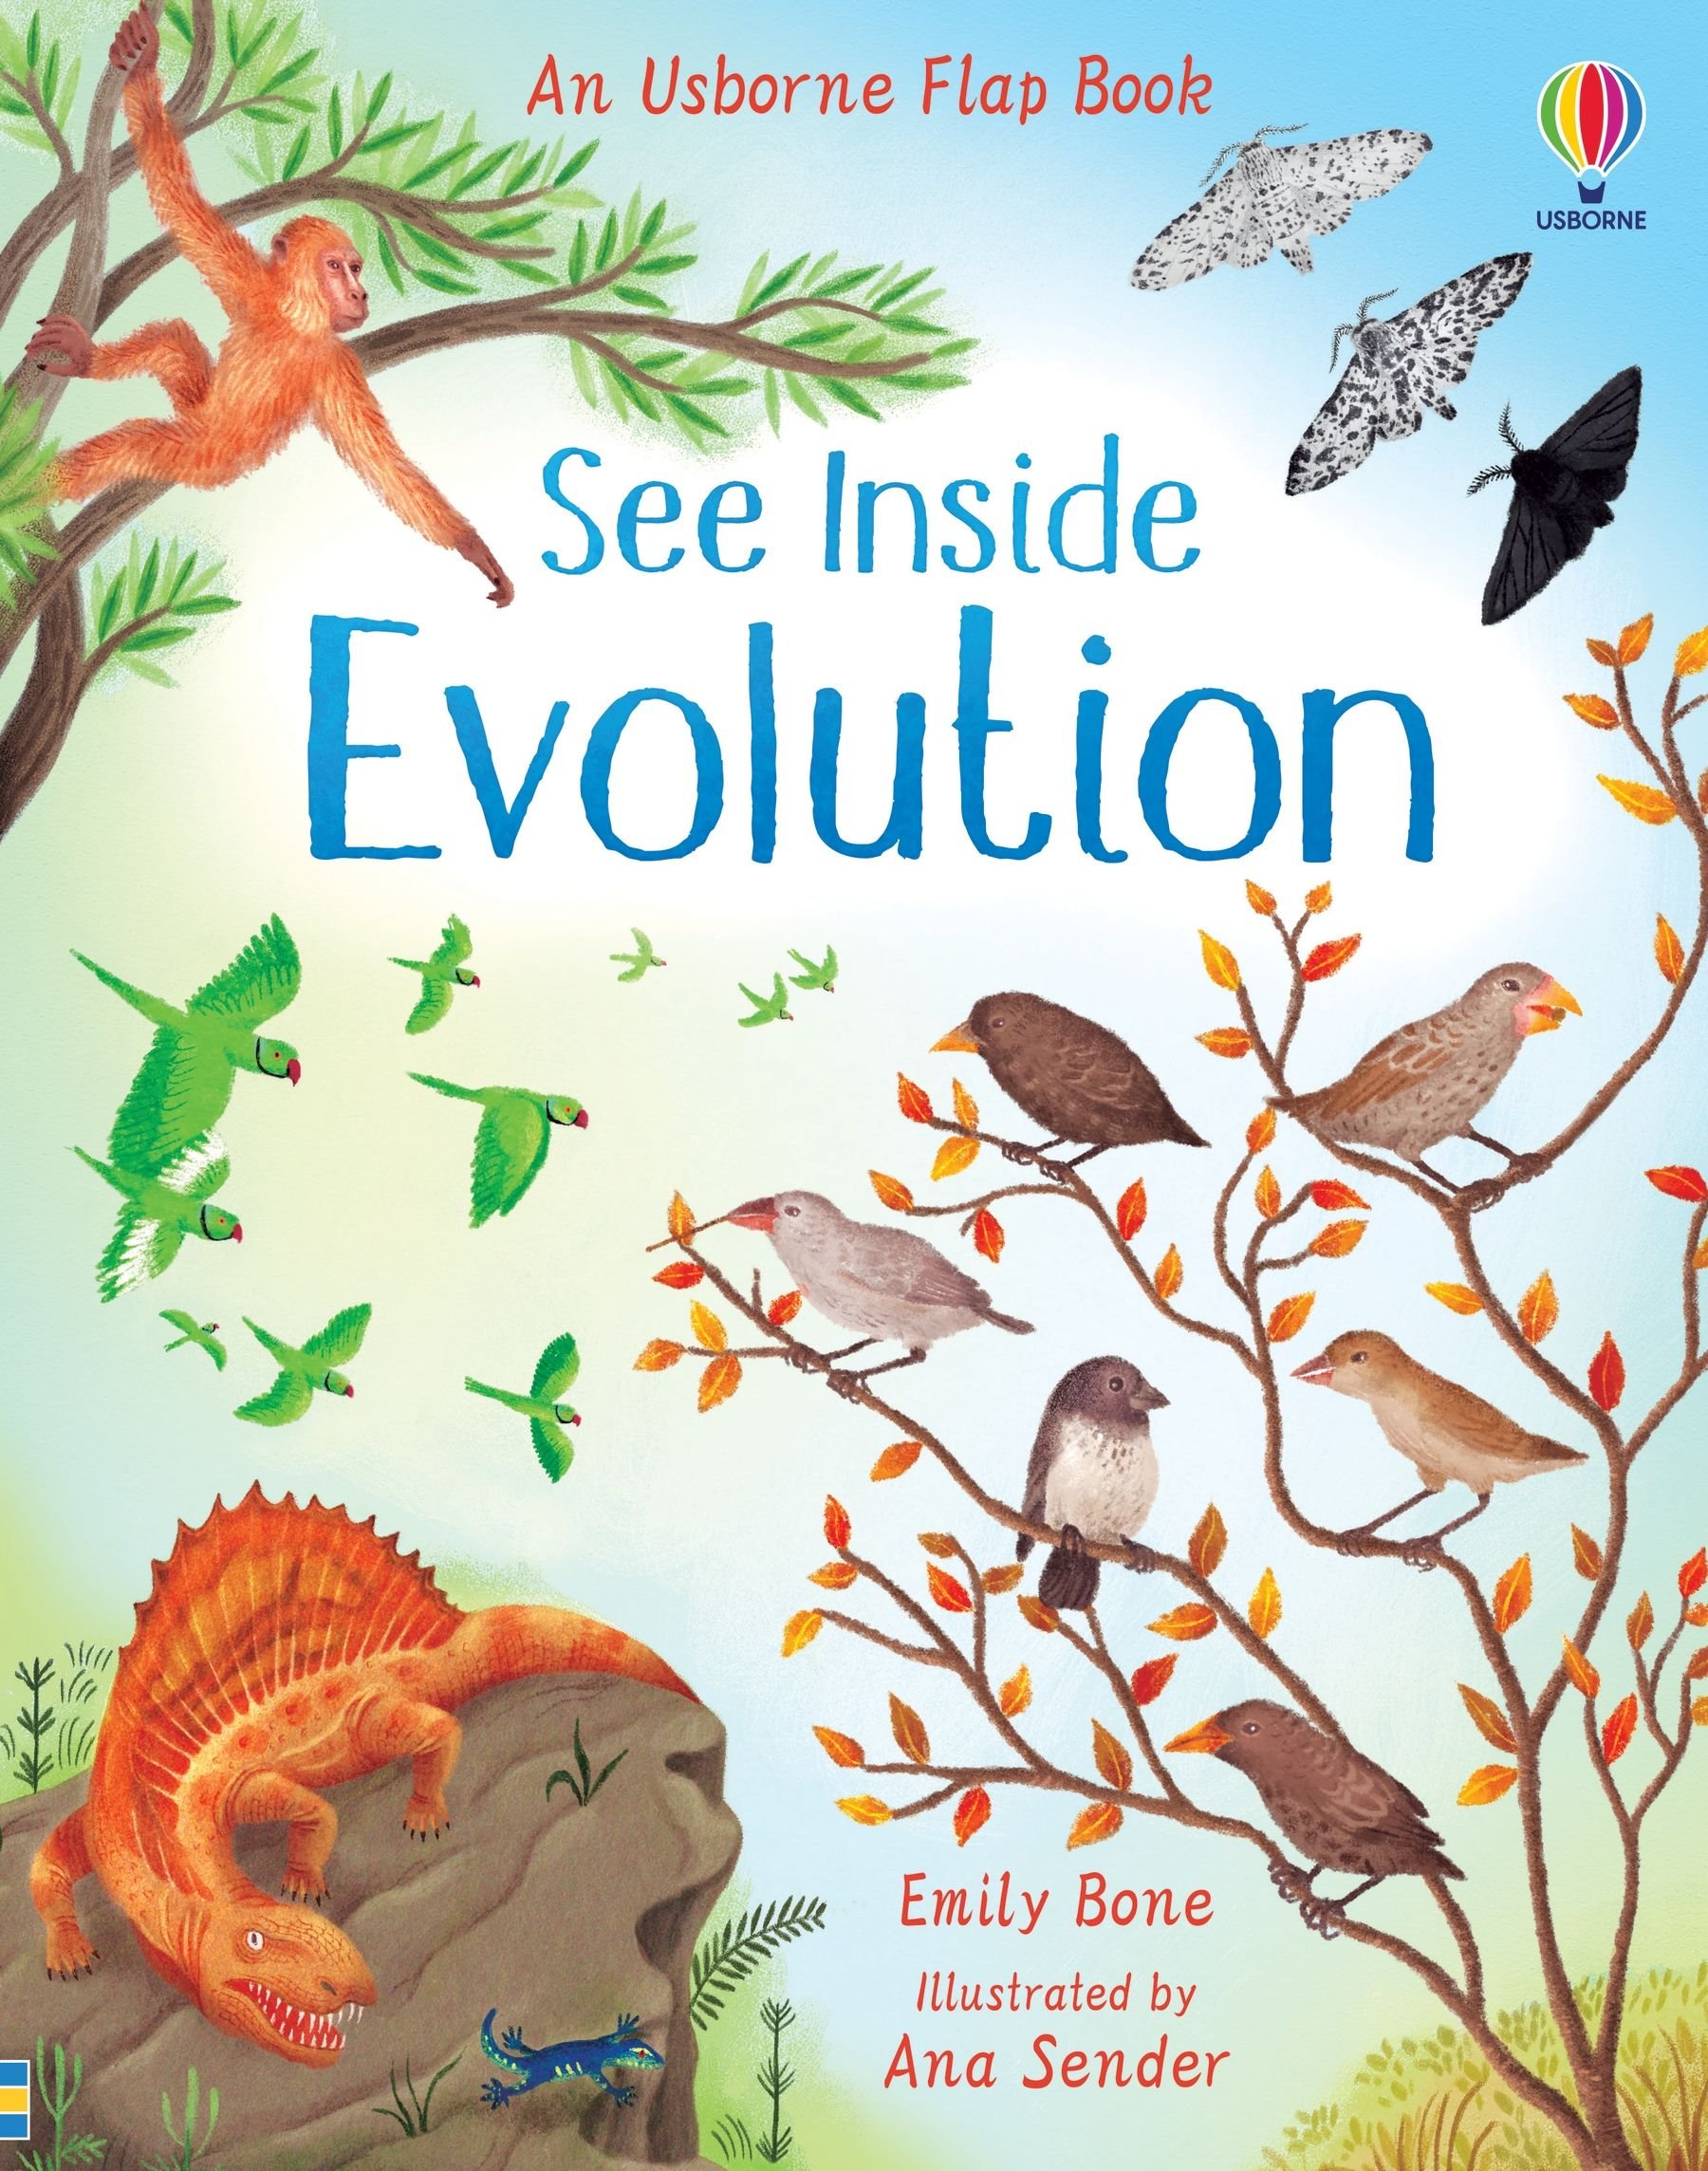 See inside Evolution